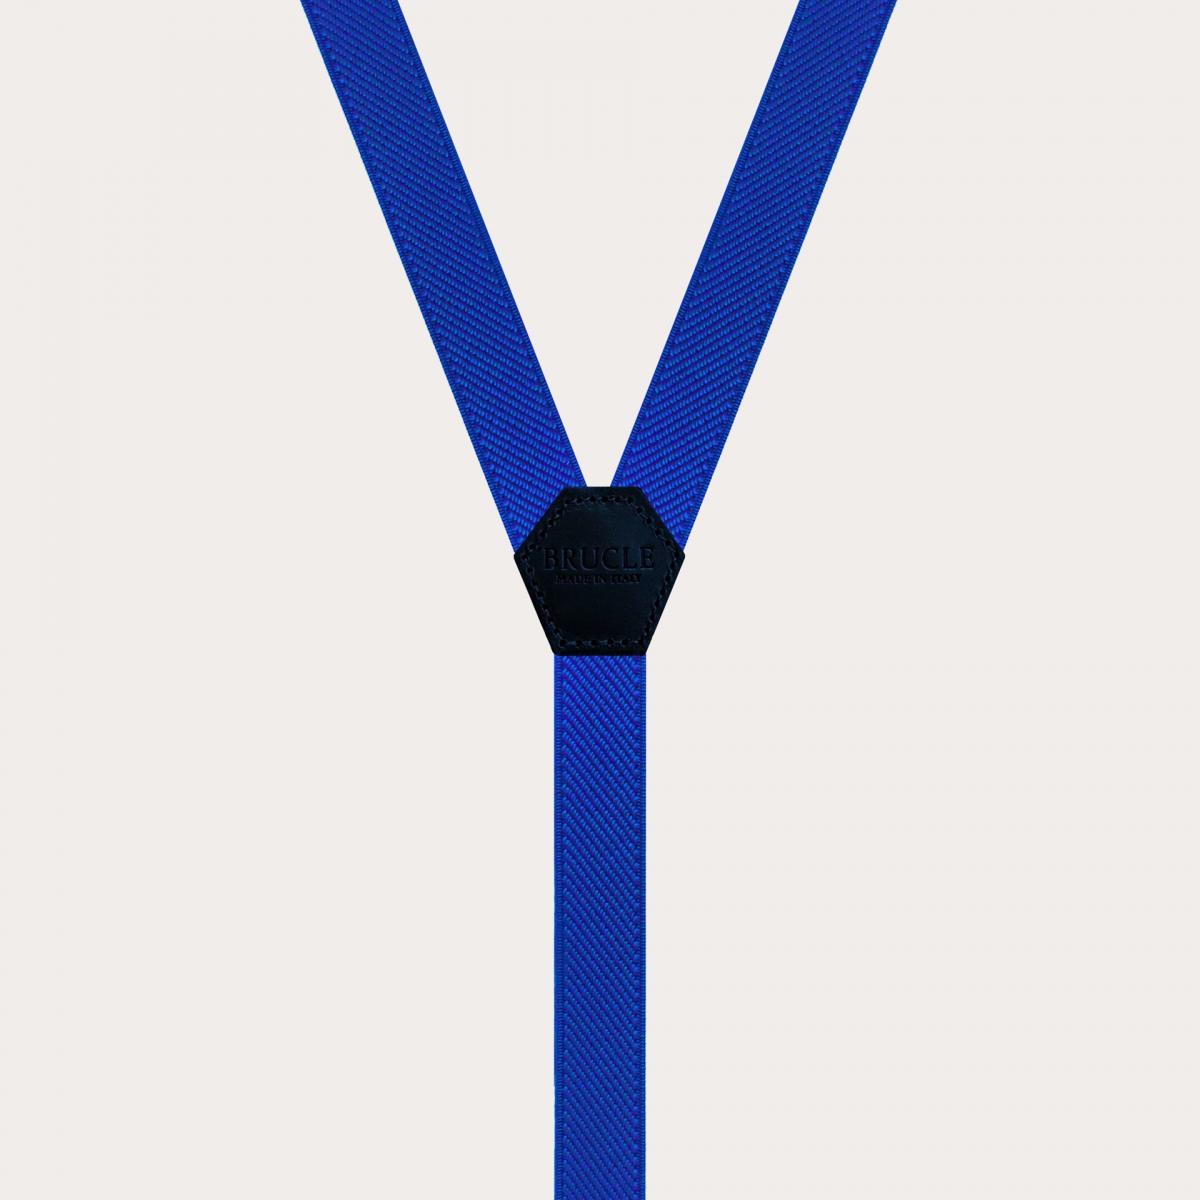 Tirantes finos unisex en forma de Y para niños y jóvenes, azul real